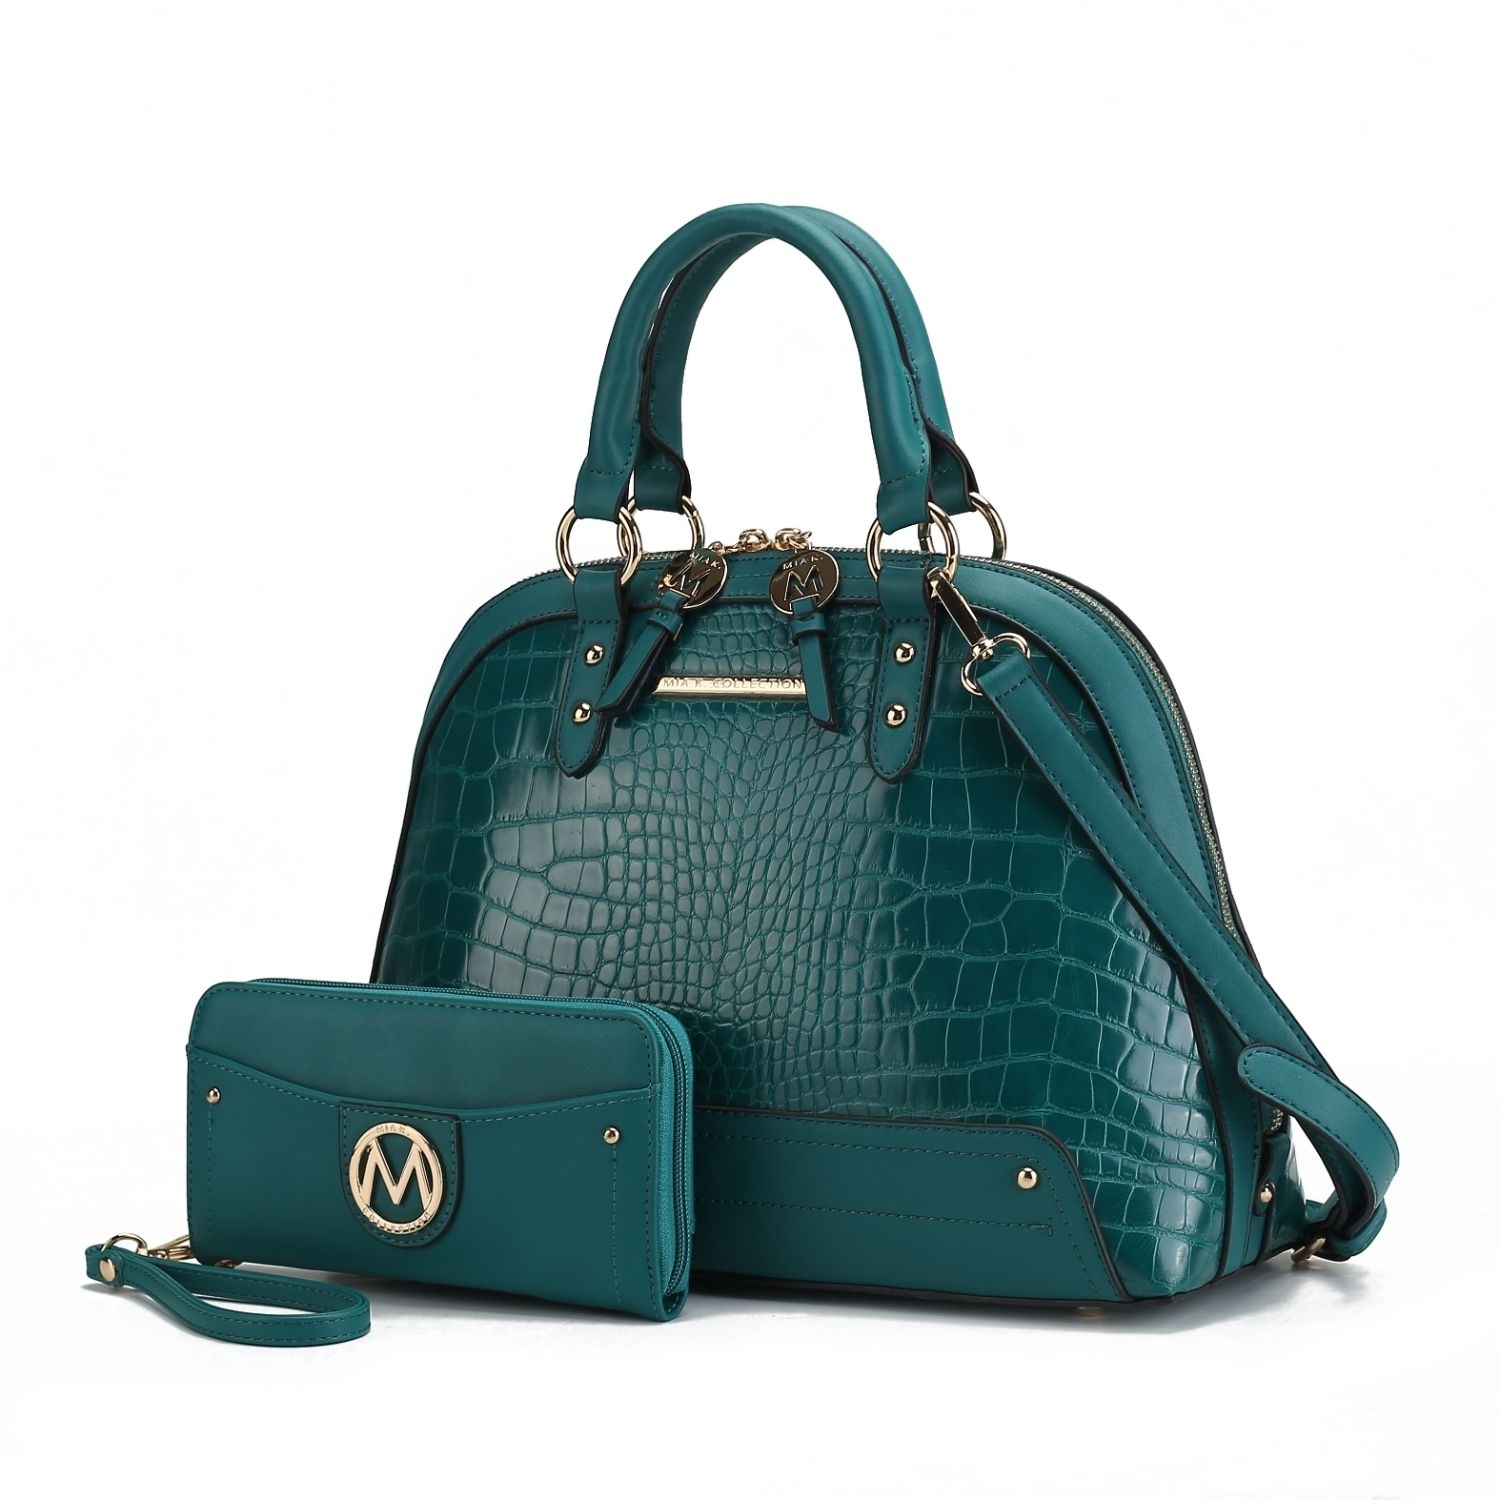 MKF Collection Nora Croco Satchel Handbag By Mia K. - Teal